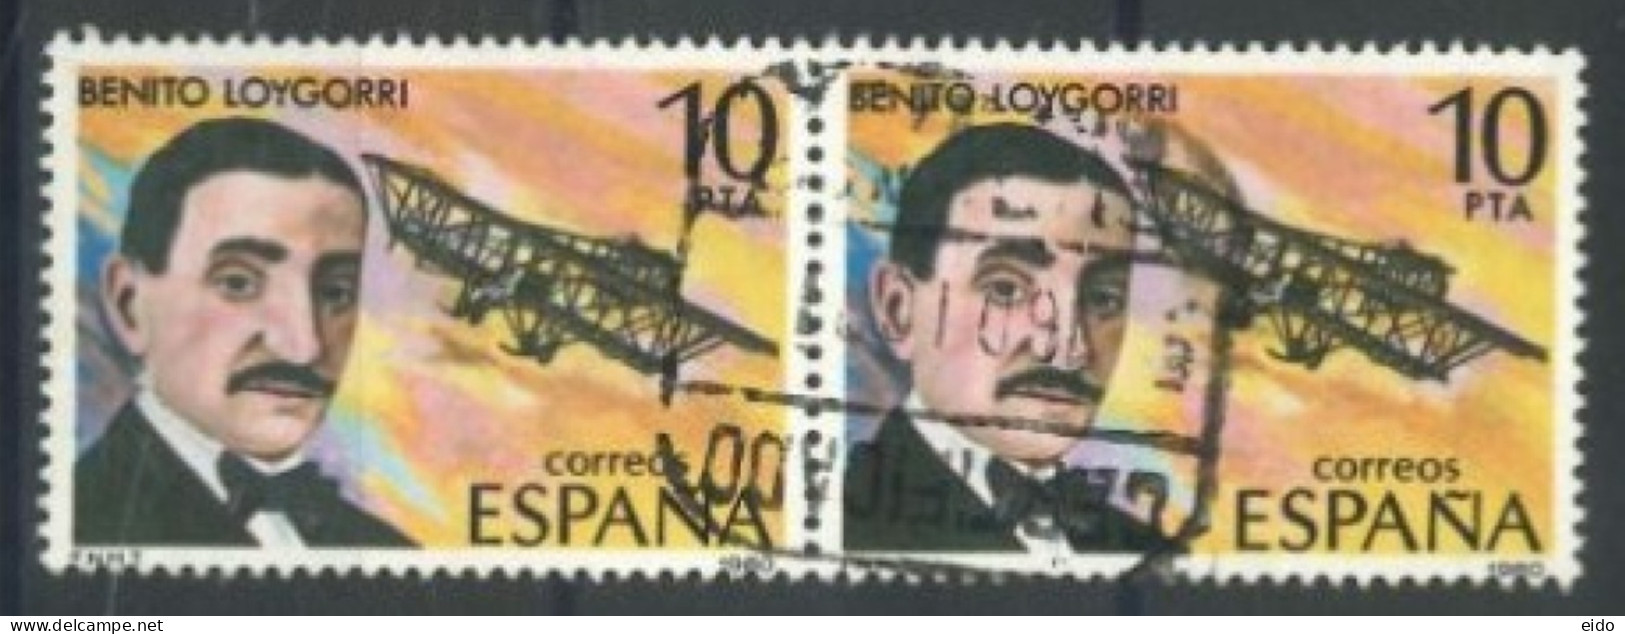 SPAIN, 1980, AVIATION PIONEERS PAIR OF STAMPS, # 2228, USED. - Gebraucht